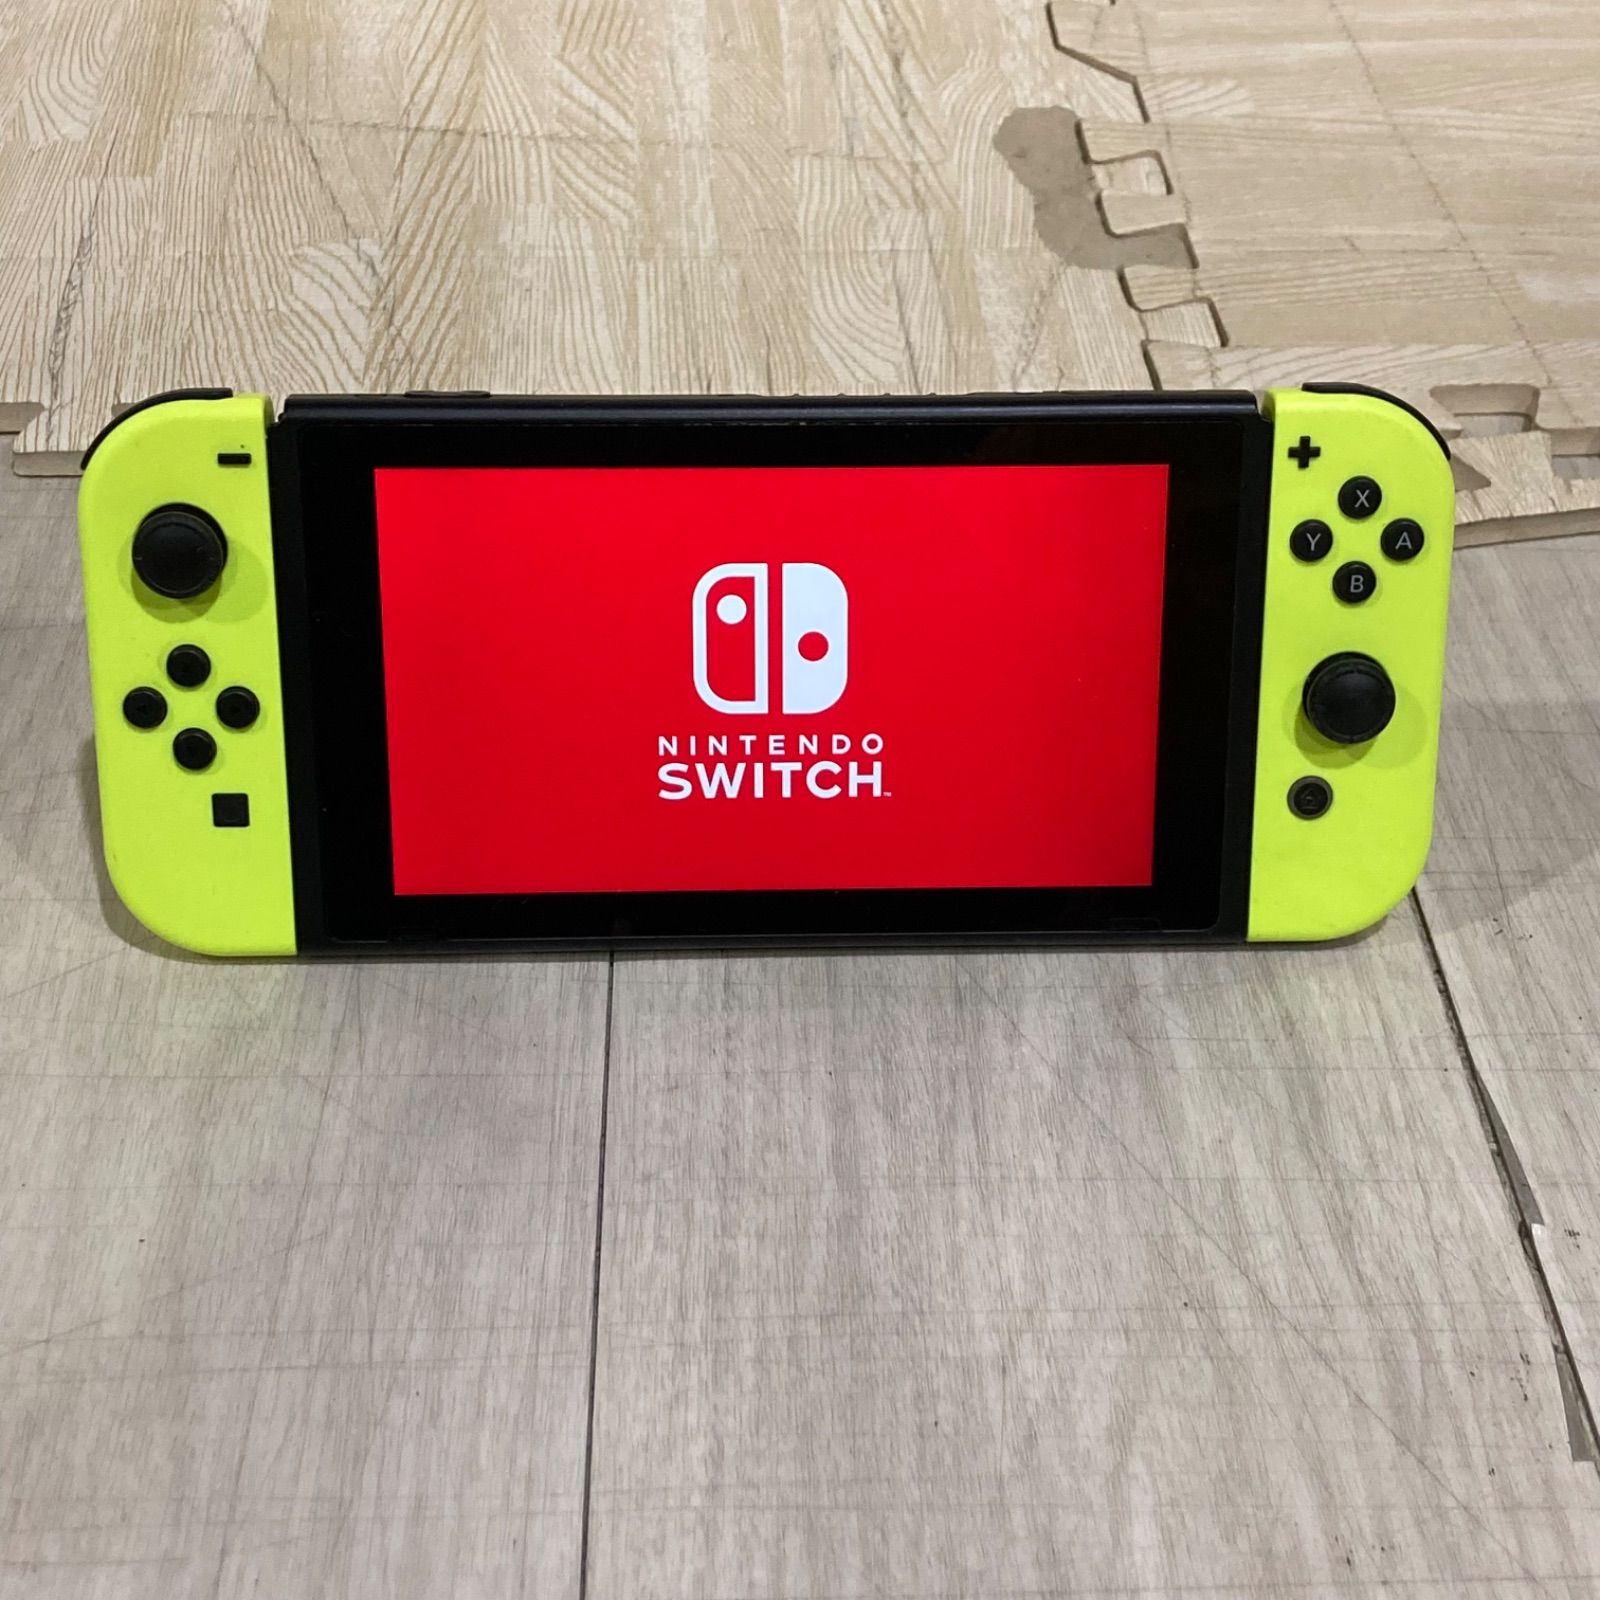 Nintendo Switch ニンテンドースイッチ イエロー 本体のみ - メルカリ